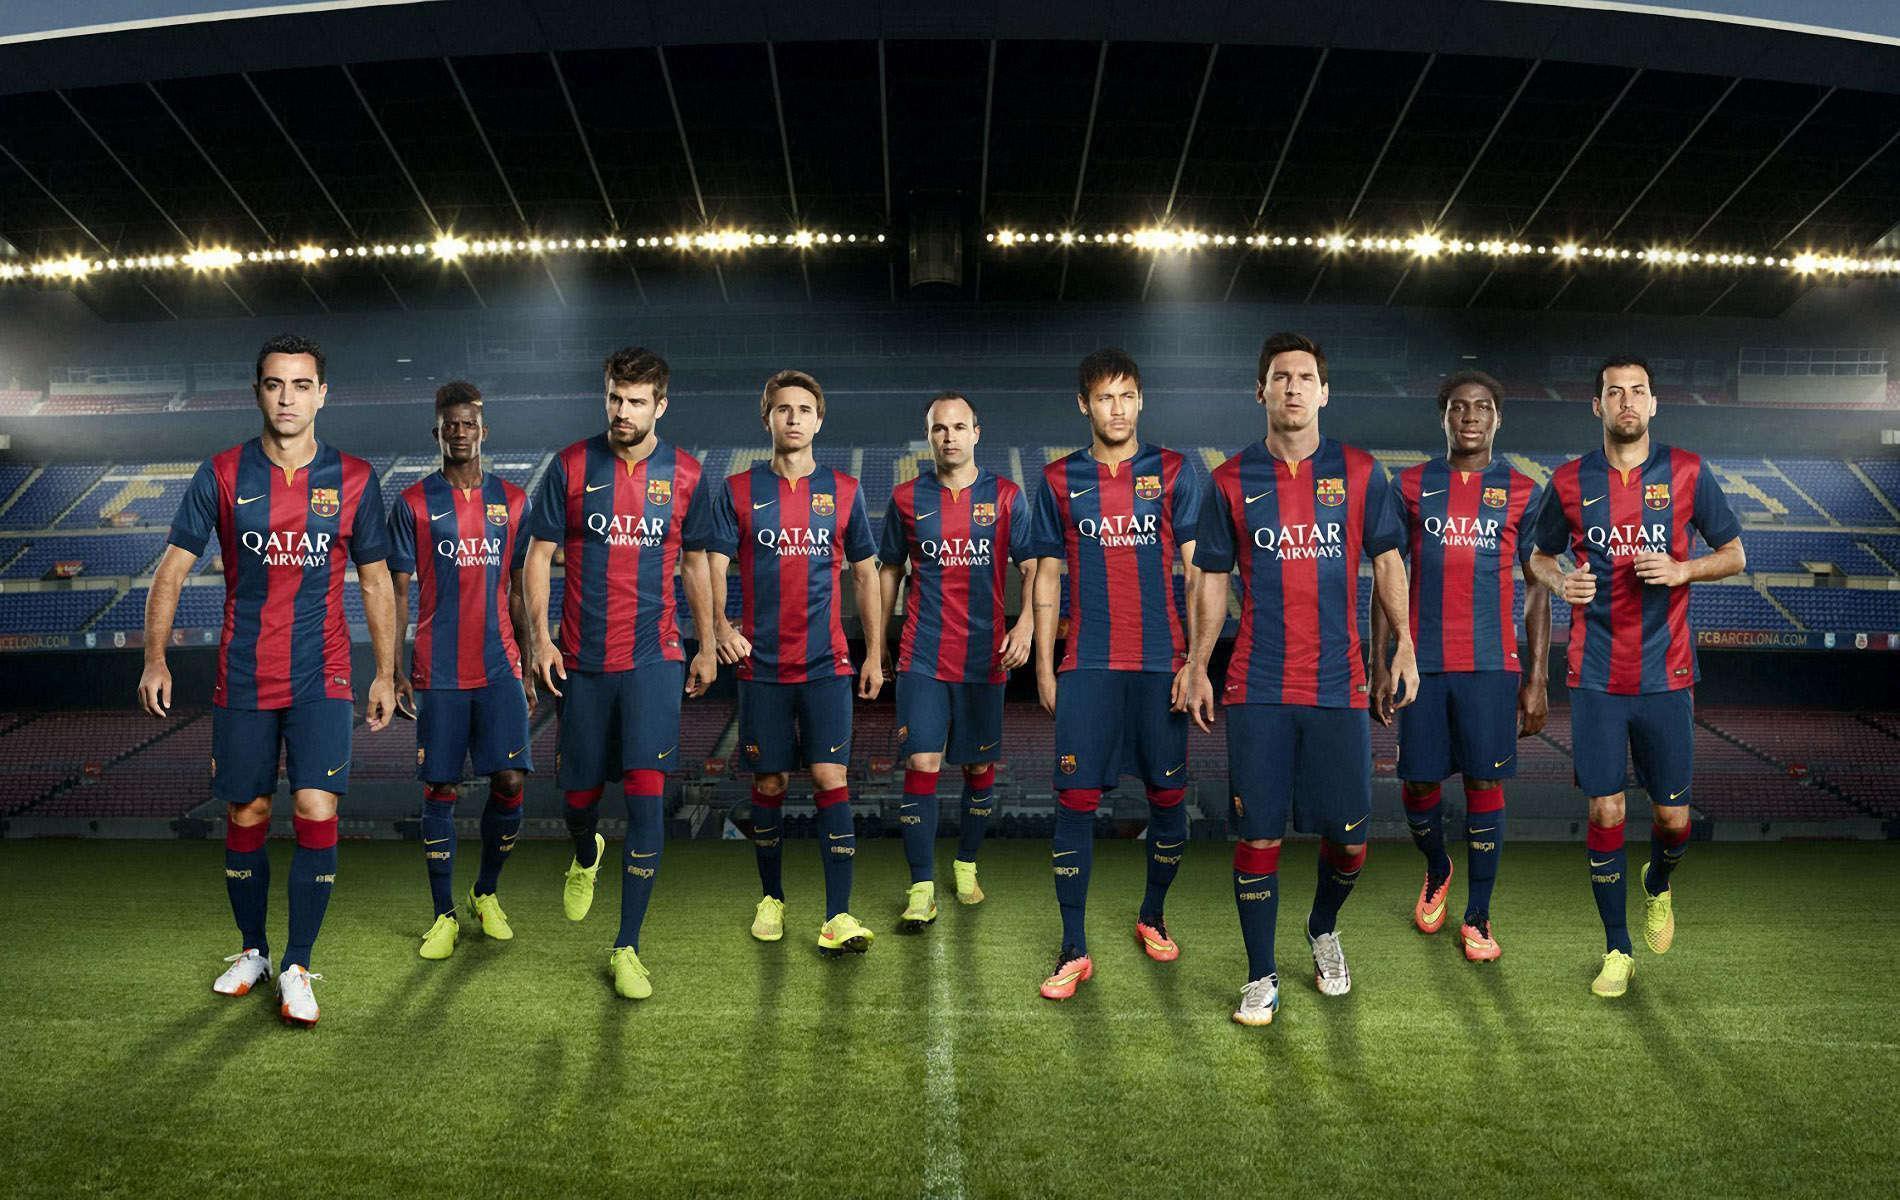 FC Barcelona HD Picture